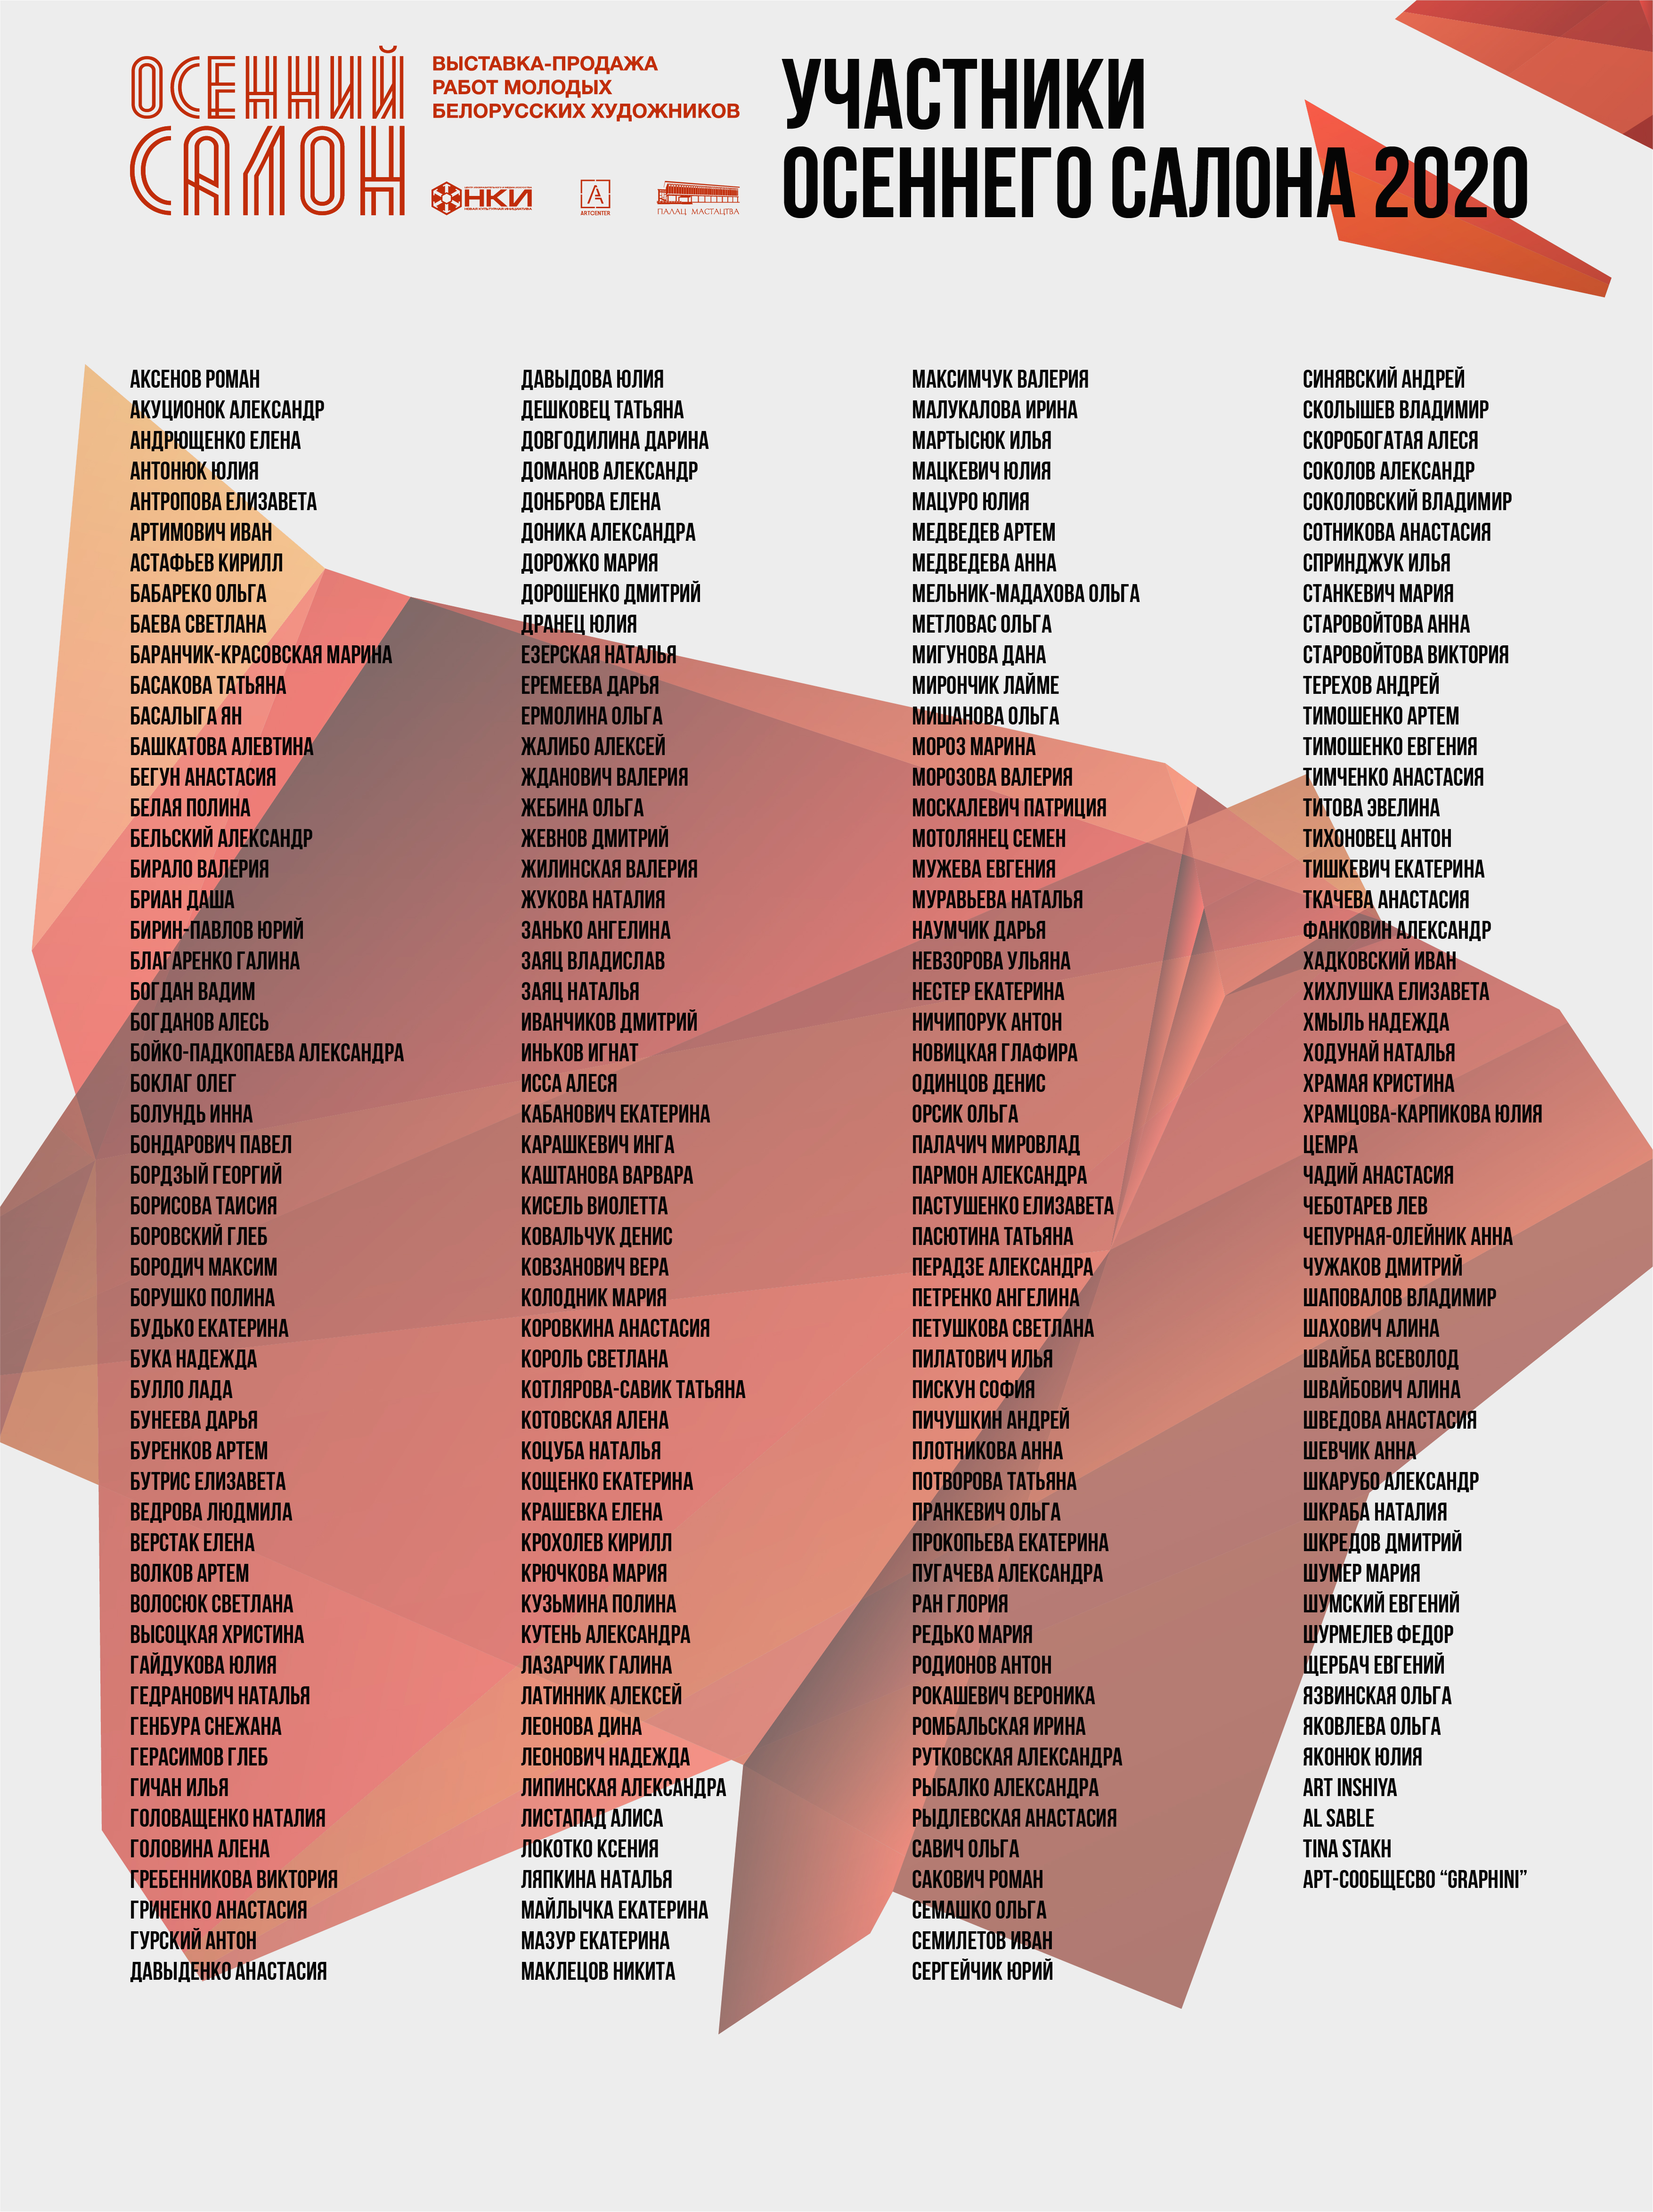 Опубликован список участников «Осеннего салона-2020»